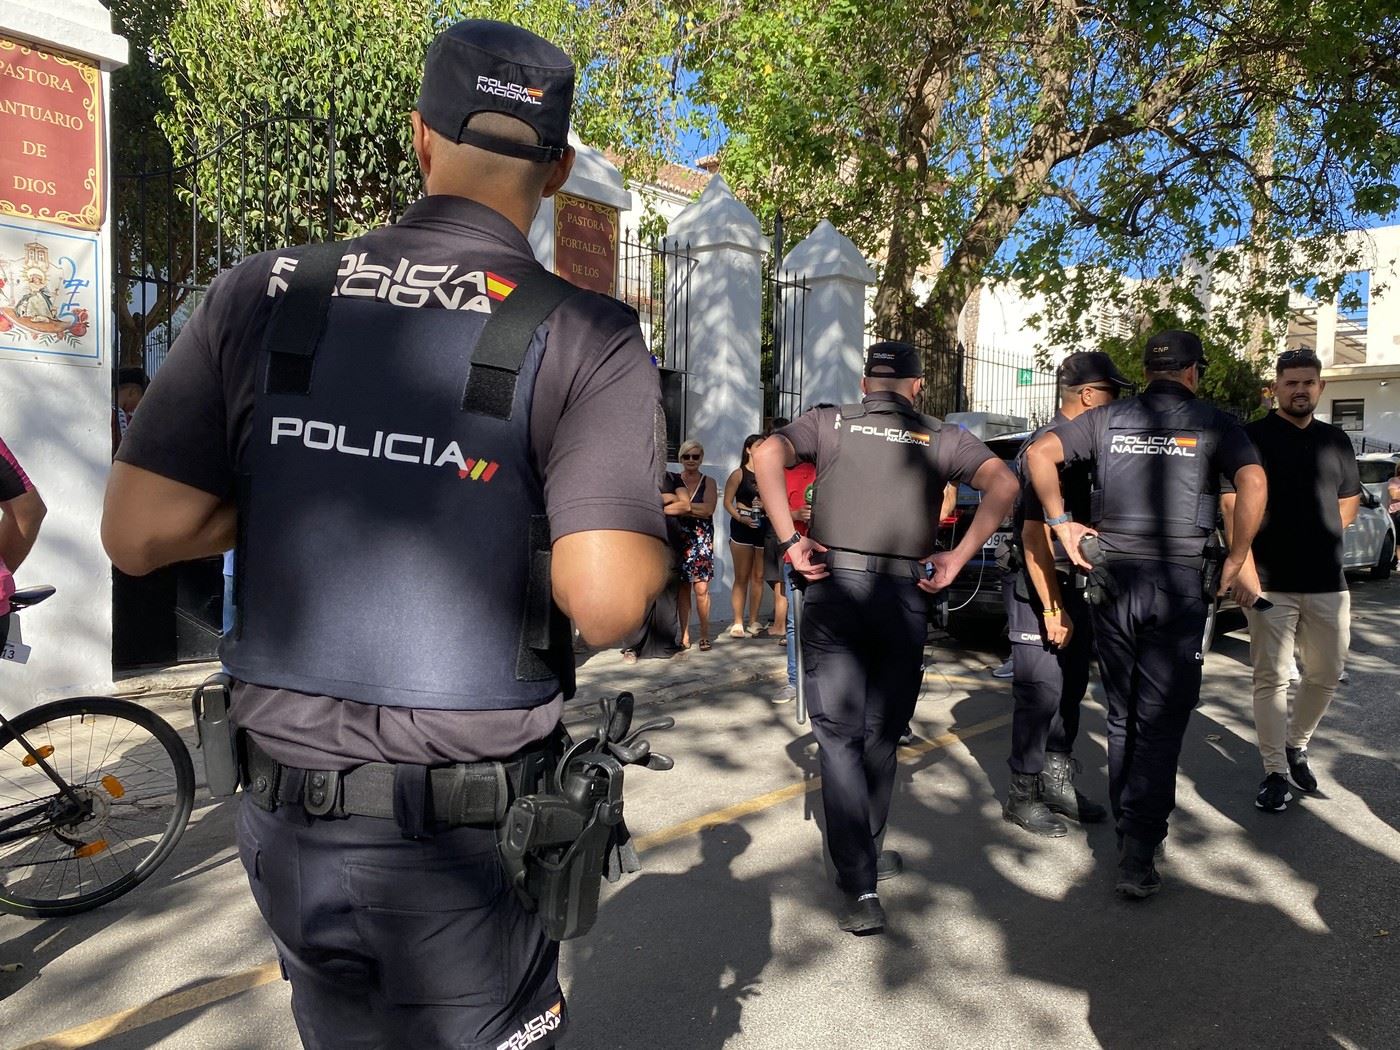 Španělská policie zatkla šest členů gangu.